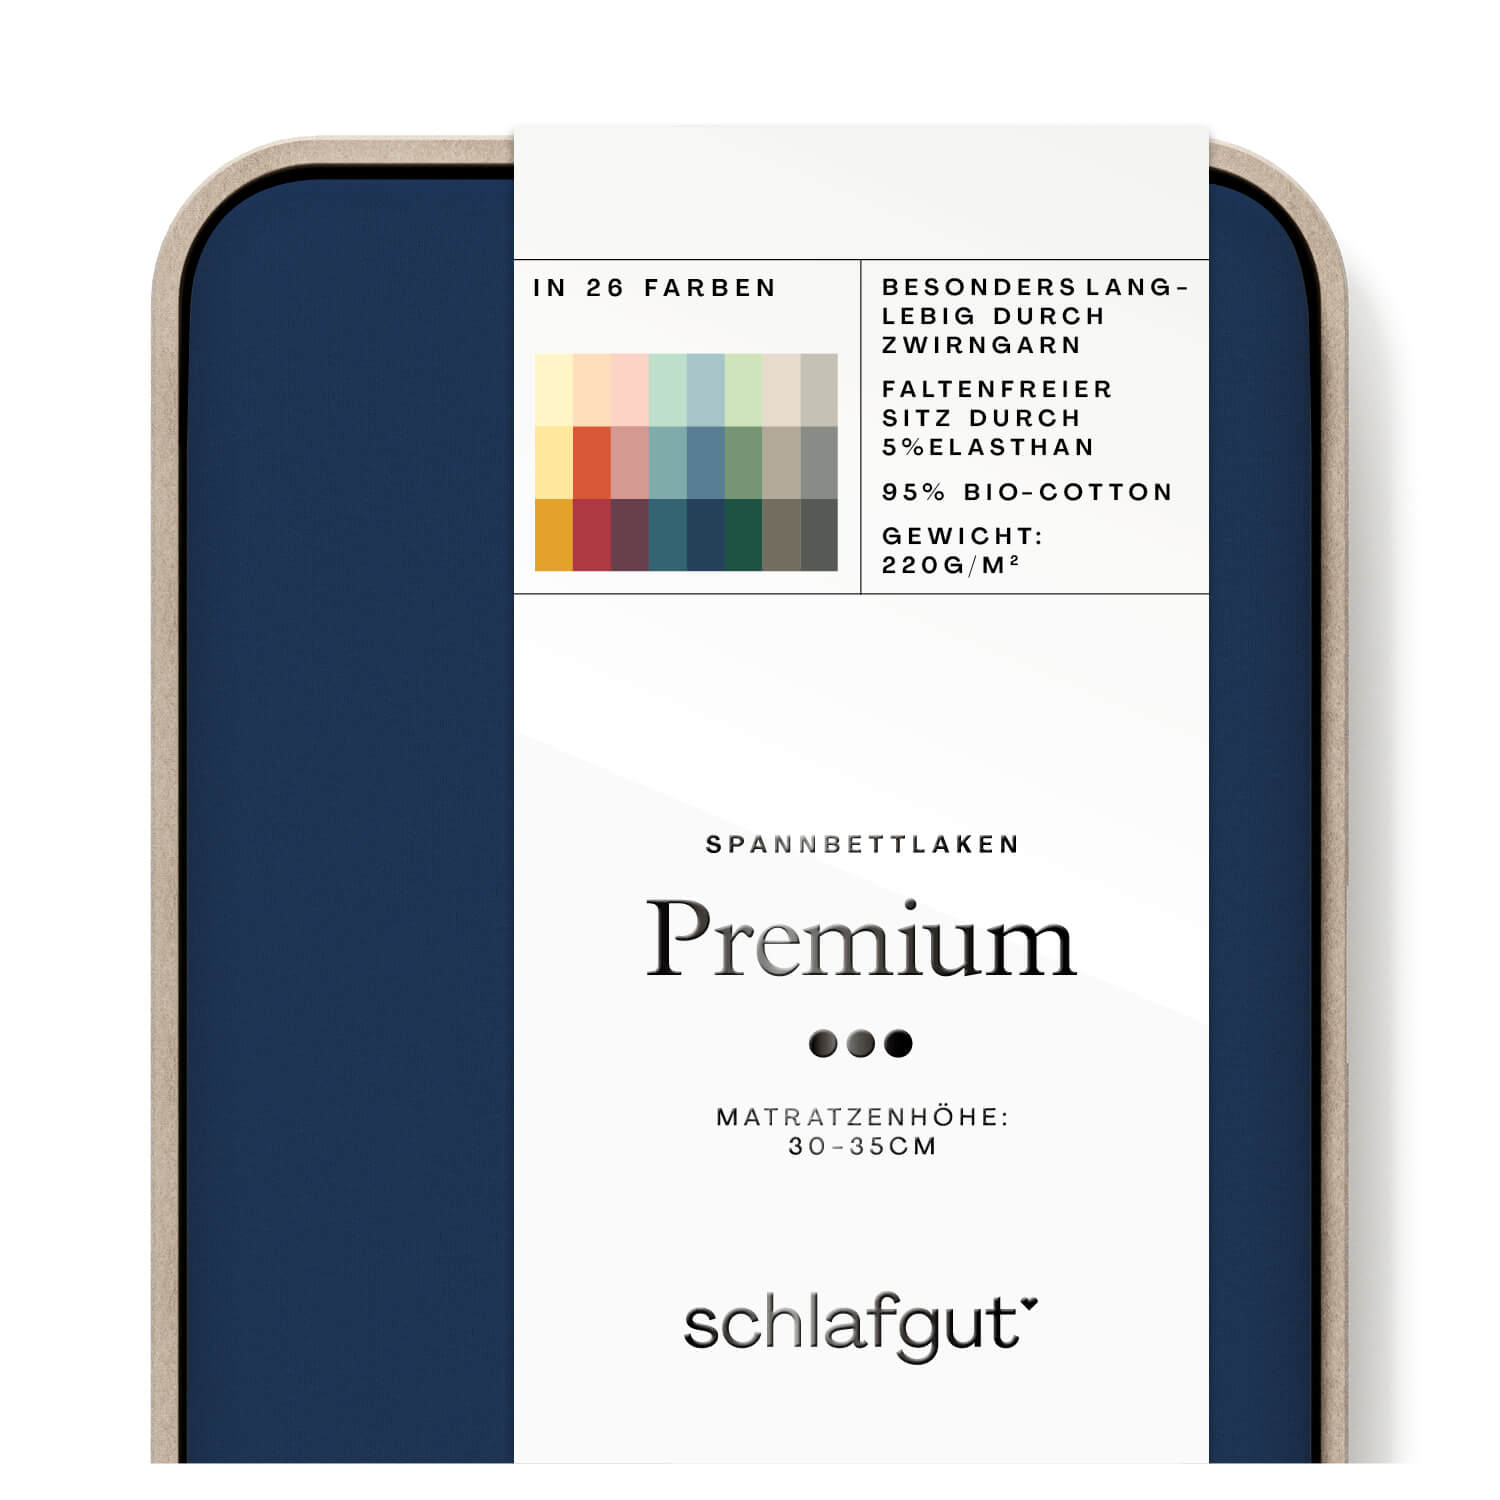 Das Produktbild vom Spannbettlaken der Reihe Premium in Farbe blue deep von Schlafgut